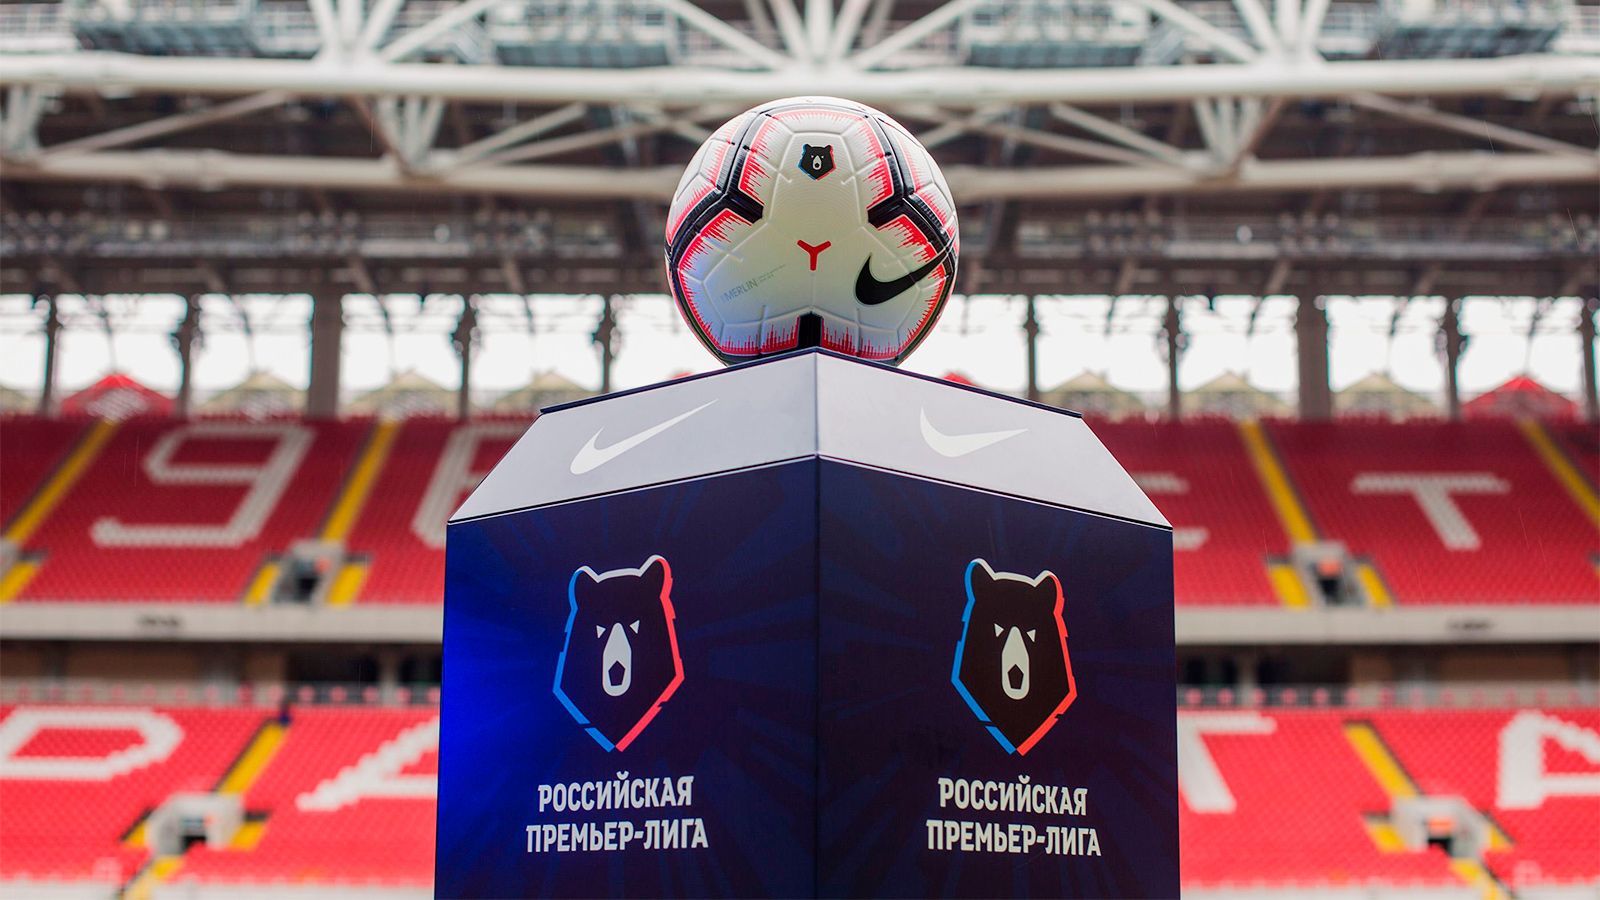 Московские клубы РПЛ просят пускать на трибуны привившихся сверх лимита